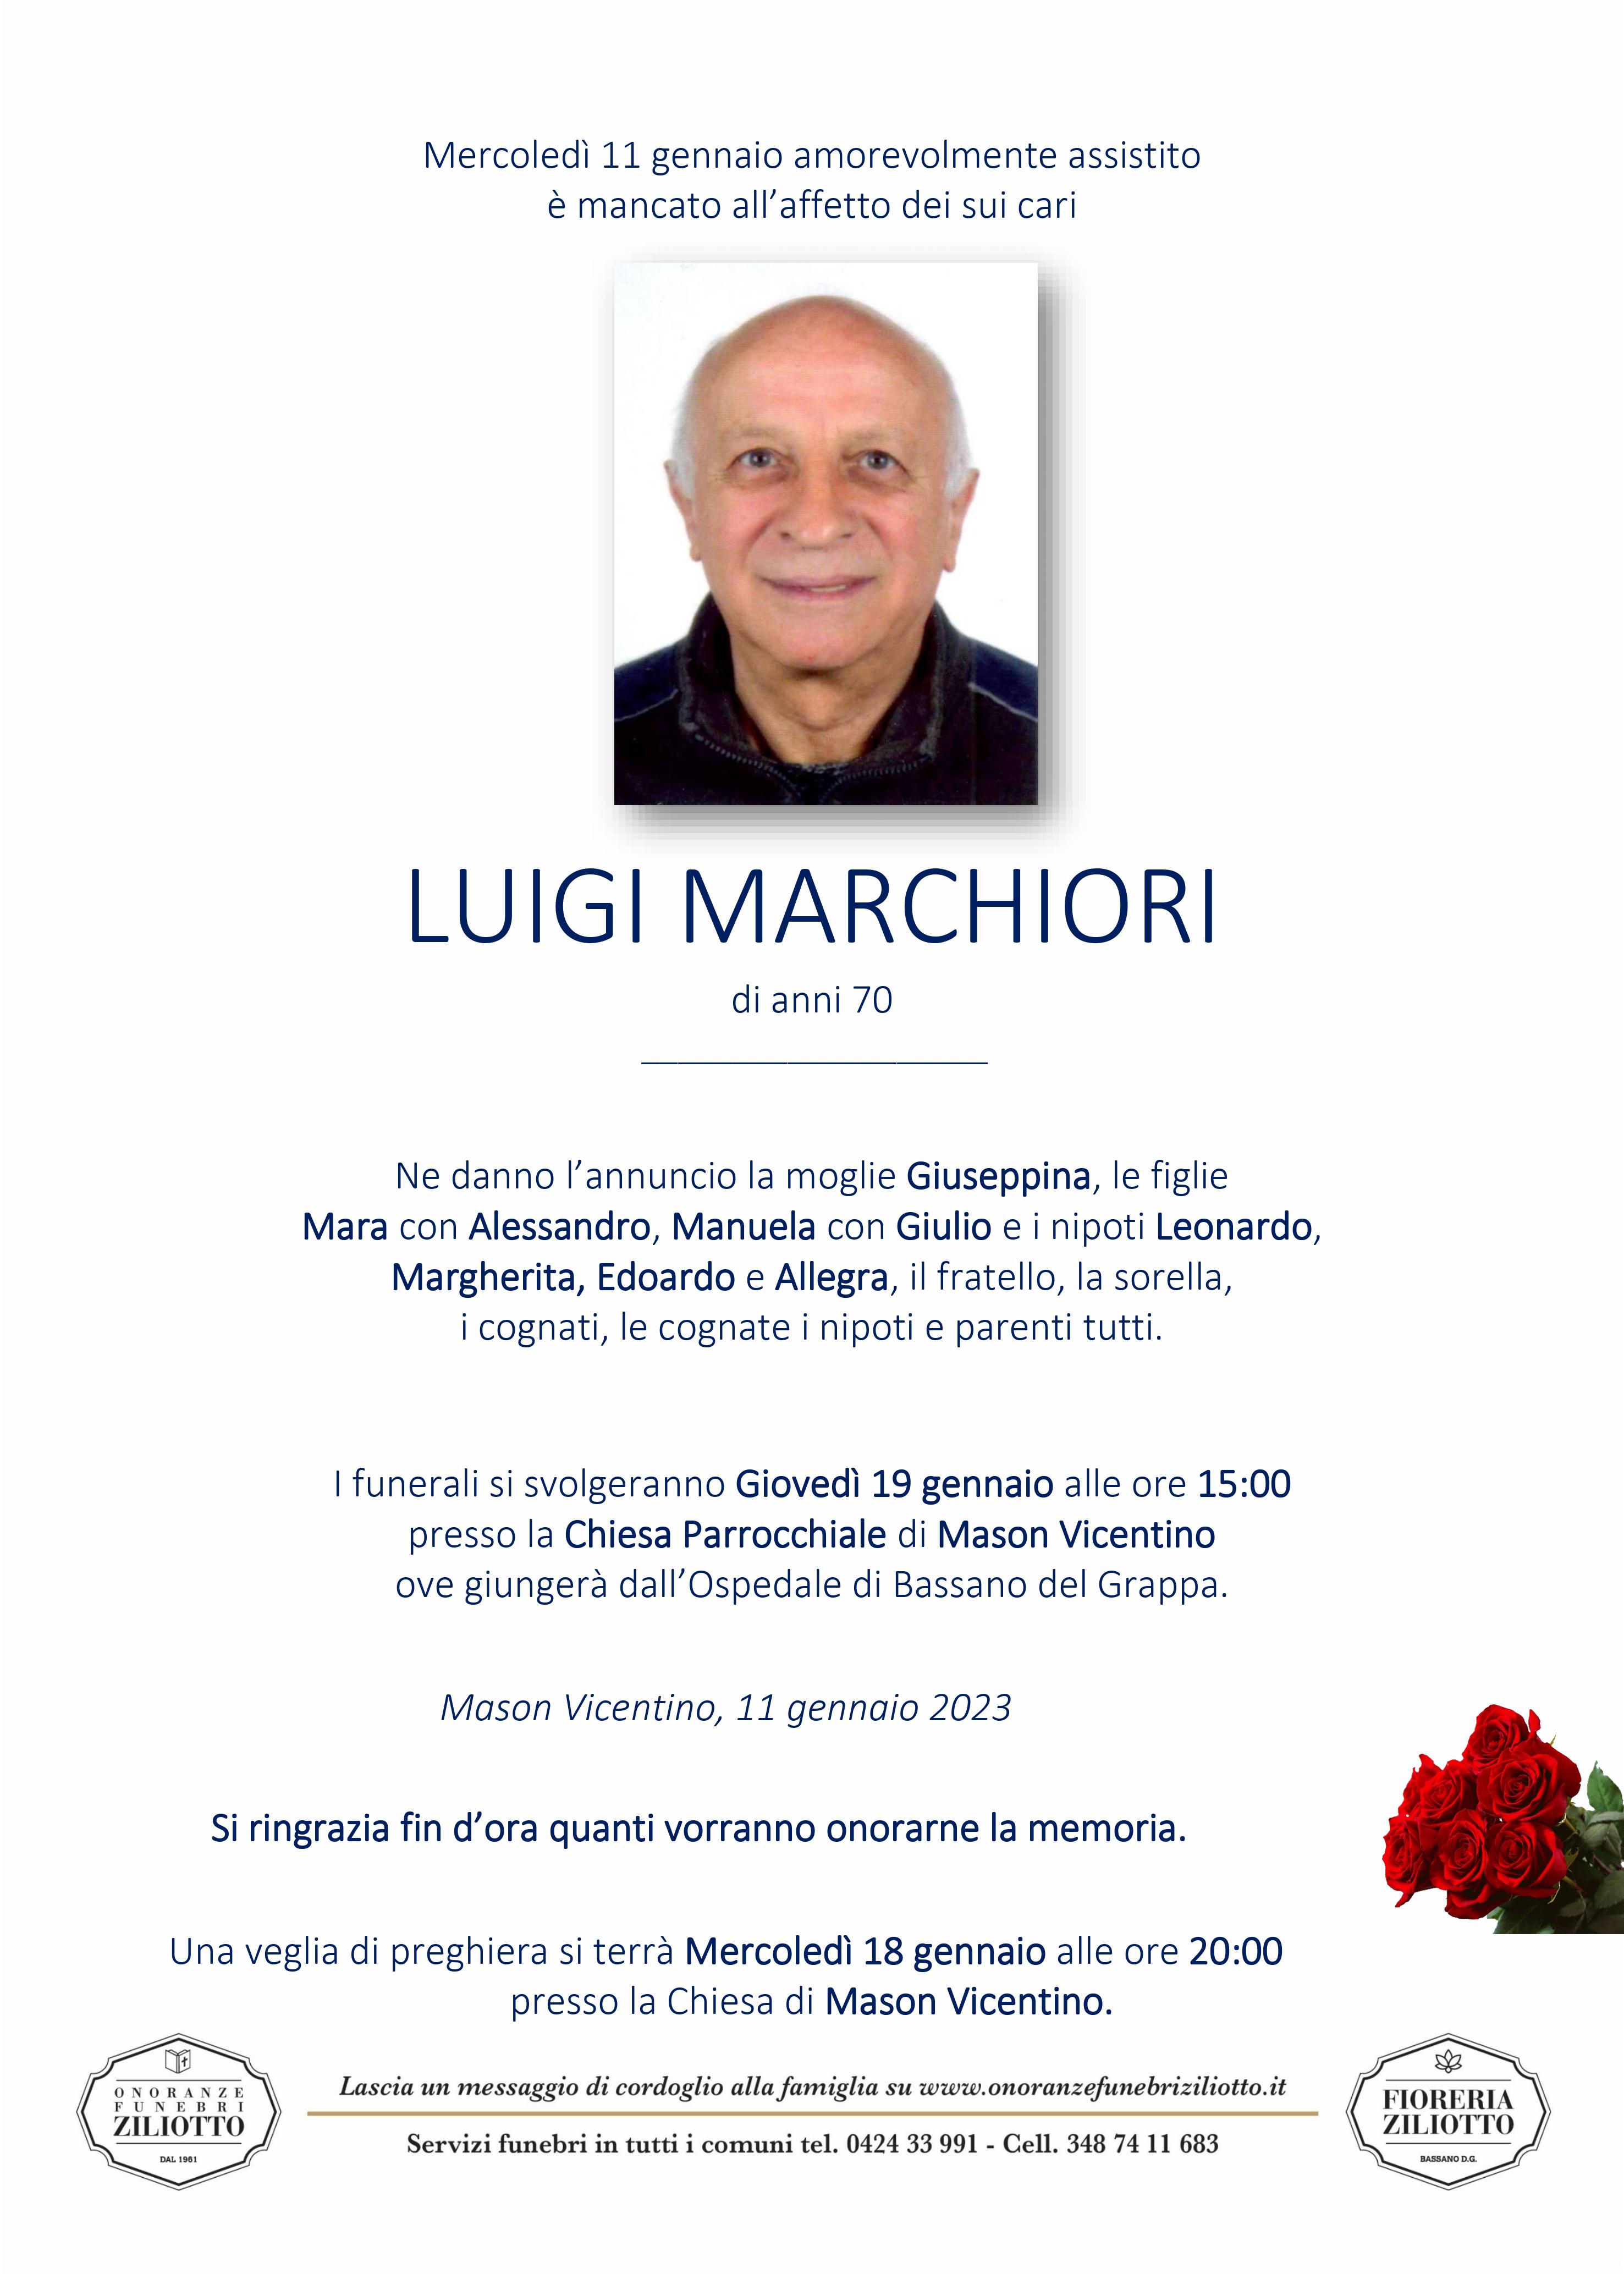 Luigi Marchiori  - 70 anni - Mason Vicentino